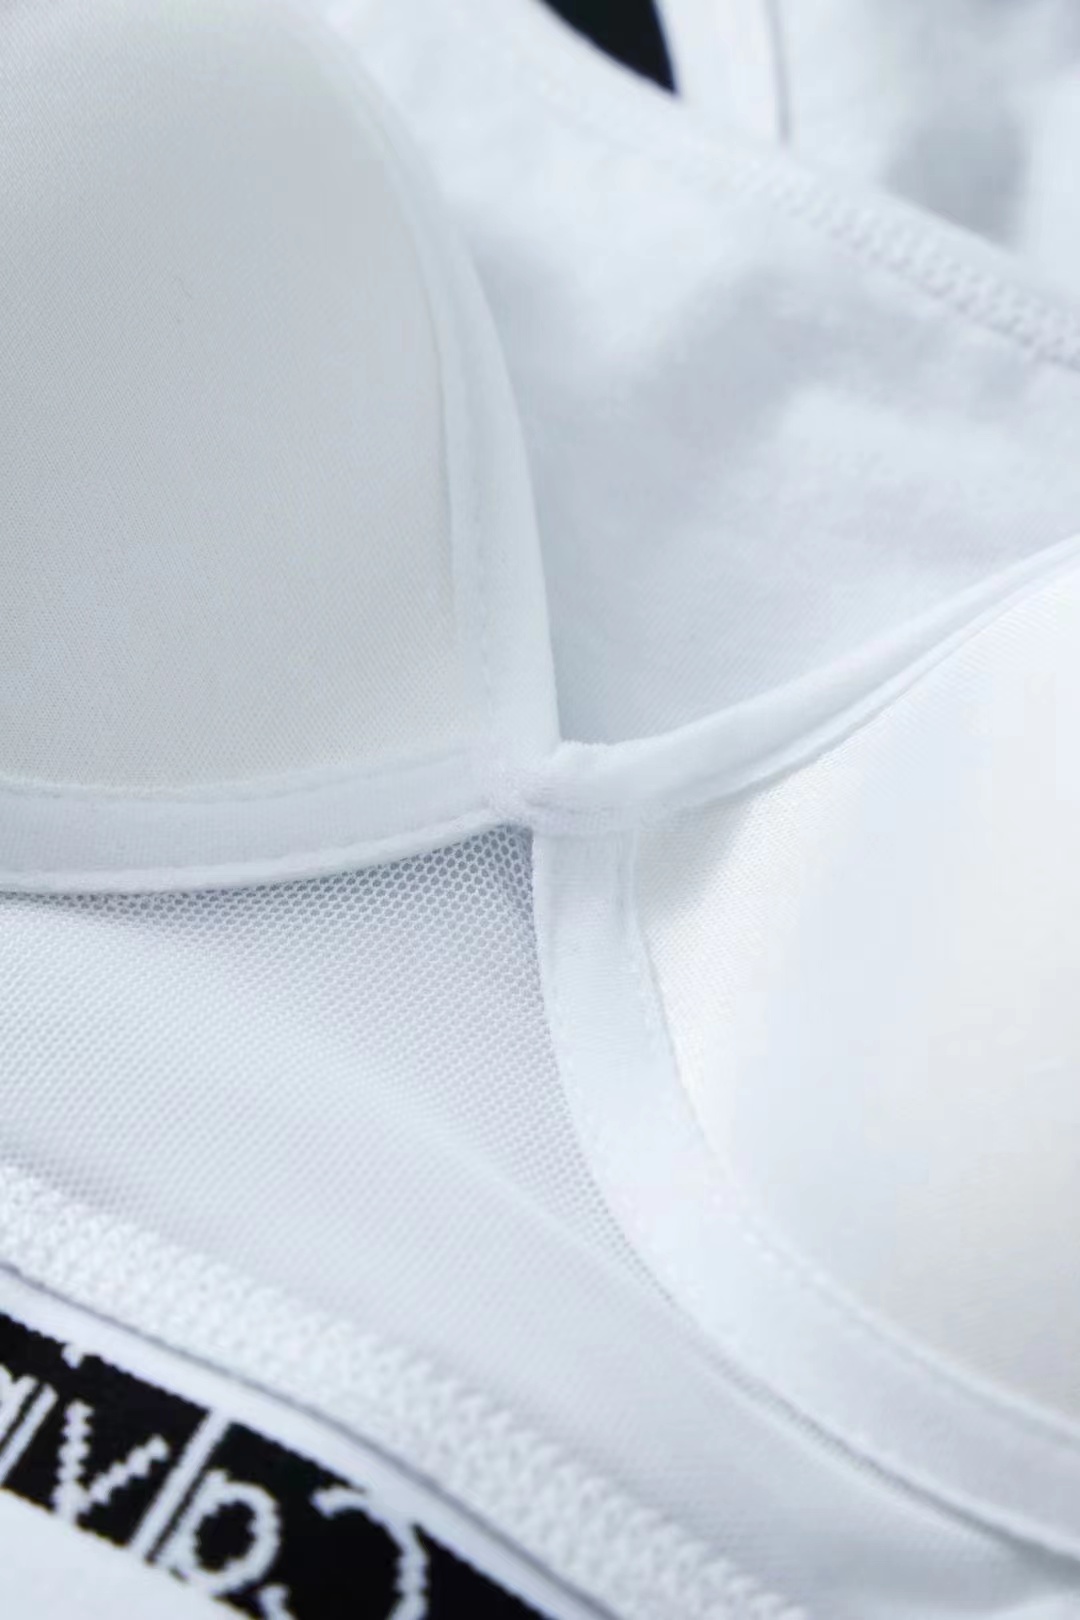 Vrouwen zonder beugel U-kraag lichte sportbeha vest ondergoed set mode-explosie vier seizoenen kunnen 7 optioneel dragen